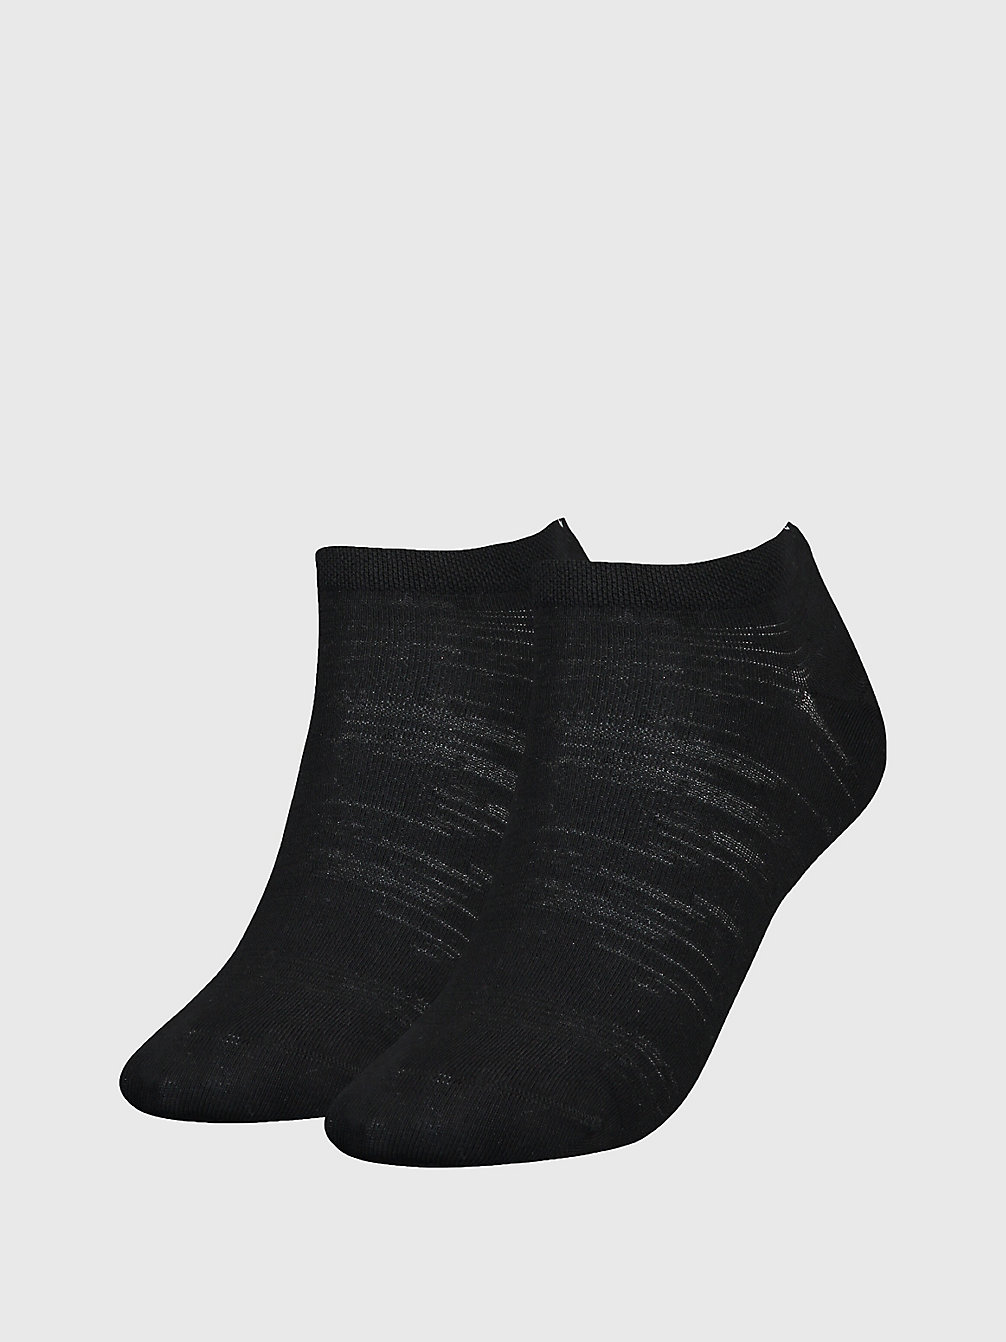 Calzini Alla Caviglia In Confezione Da 2 > BLACK > undefined donna > Calvin Klein